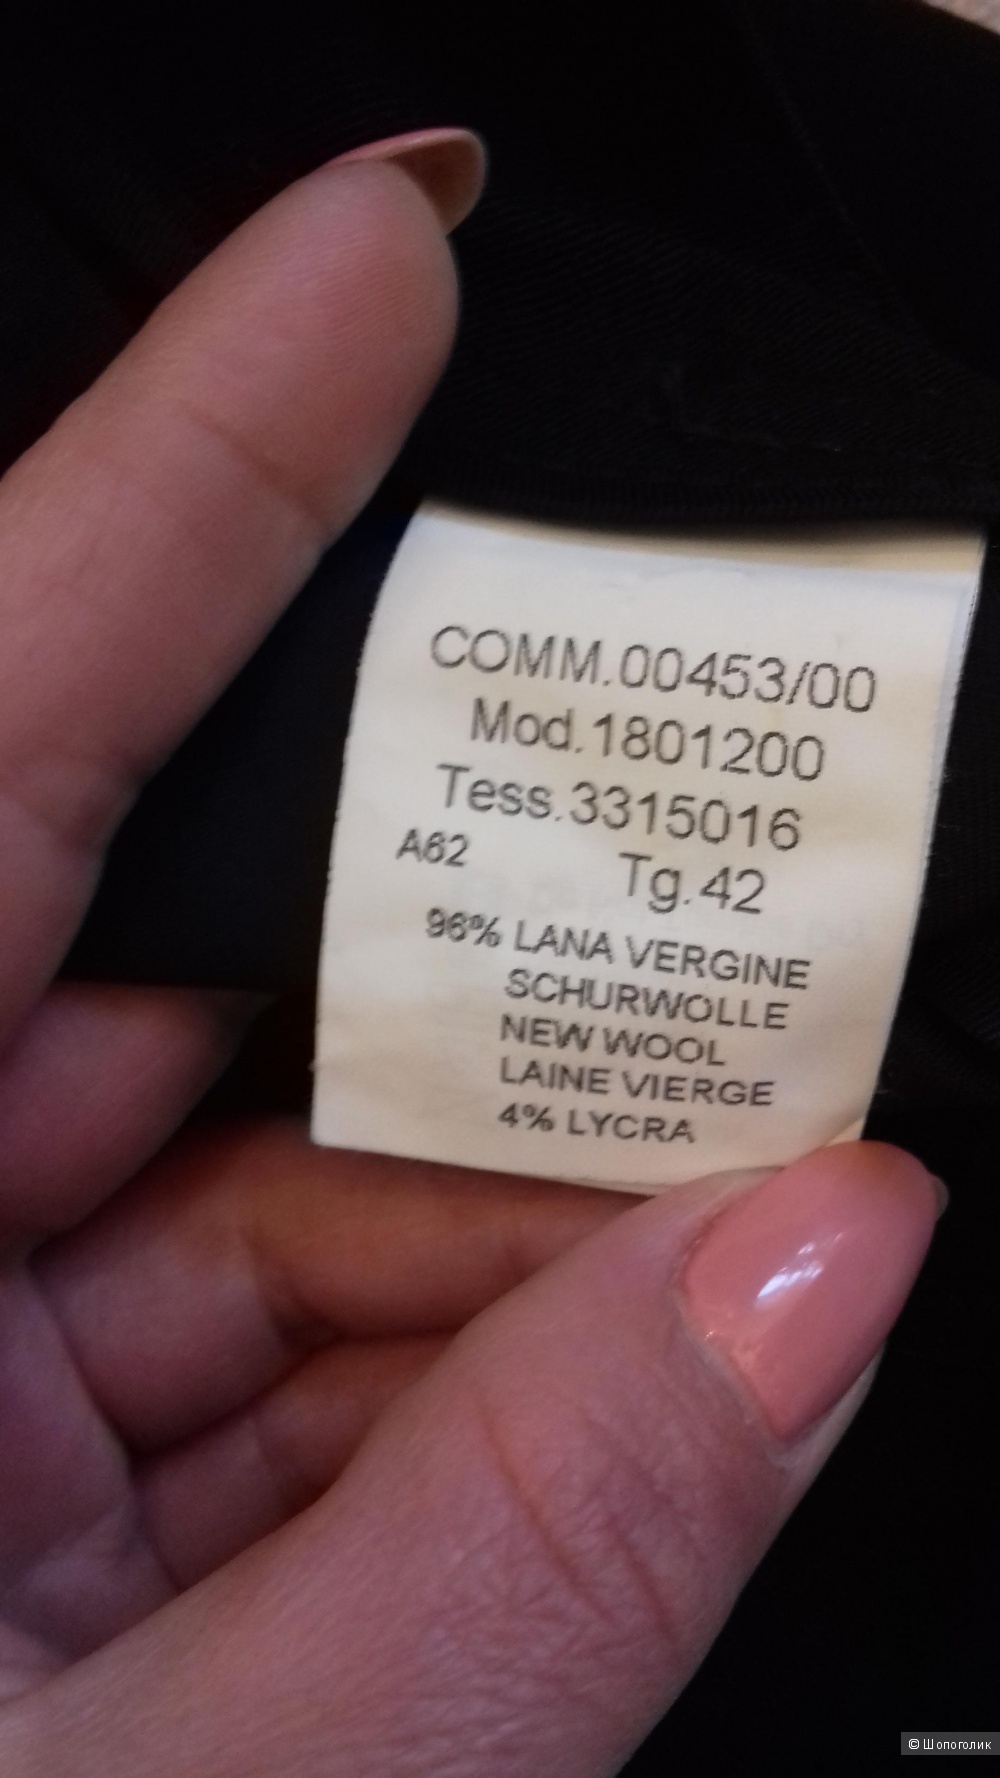 SEVENTY, удлинённые шорты из вирджинской шерсти, Италия, размер 42IT